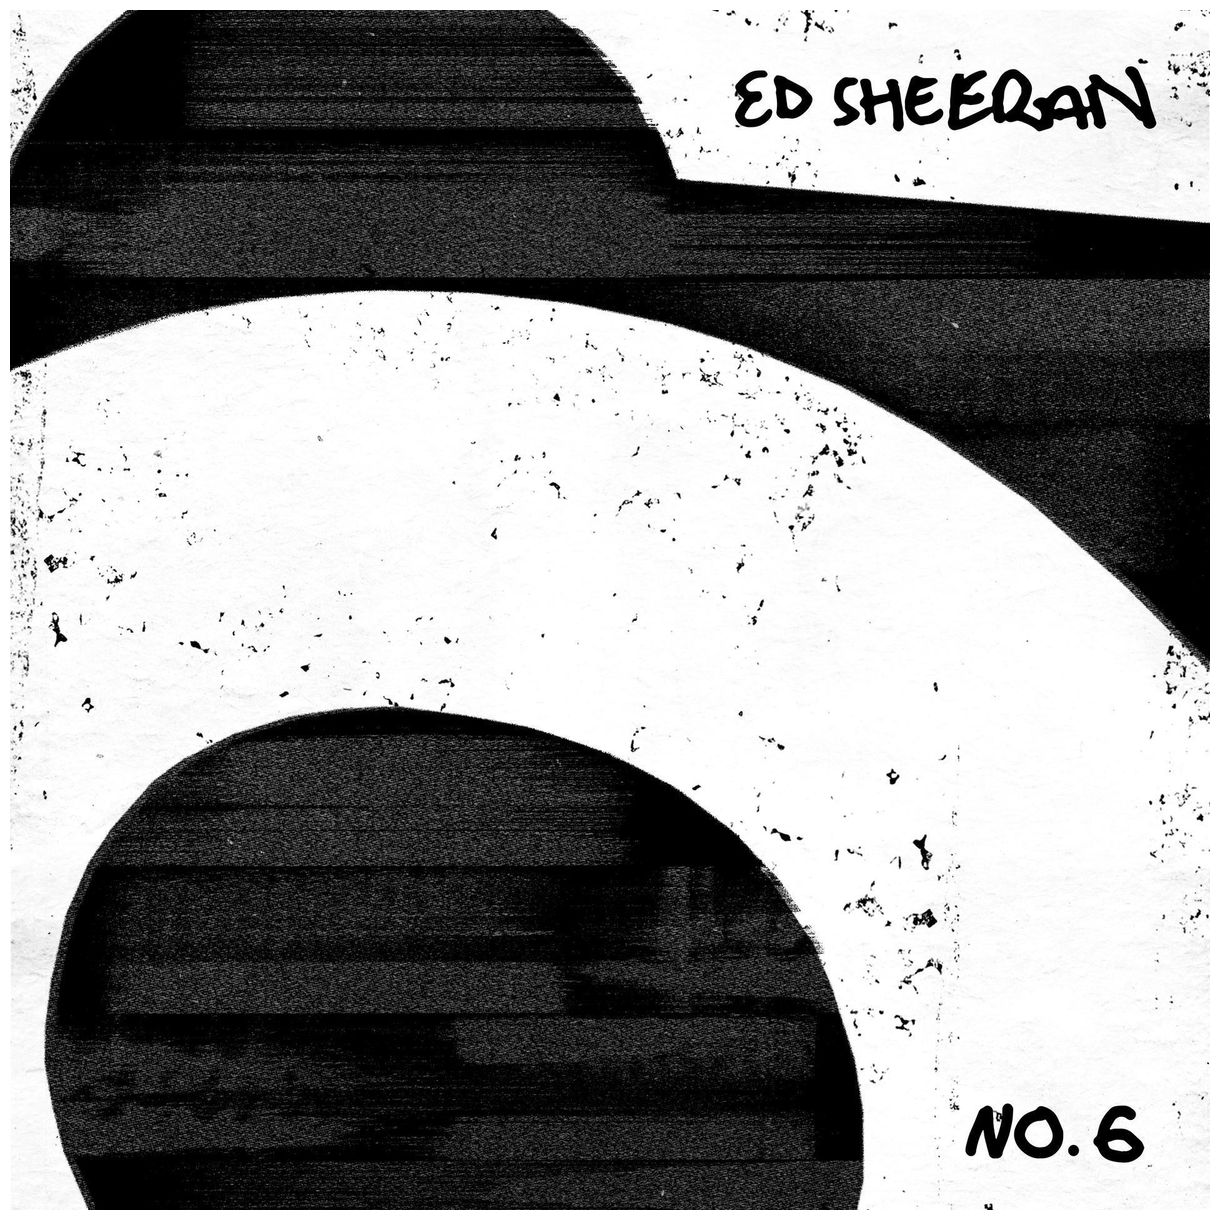 No.6 Collaborations Project (Ed Sheeran) 